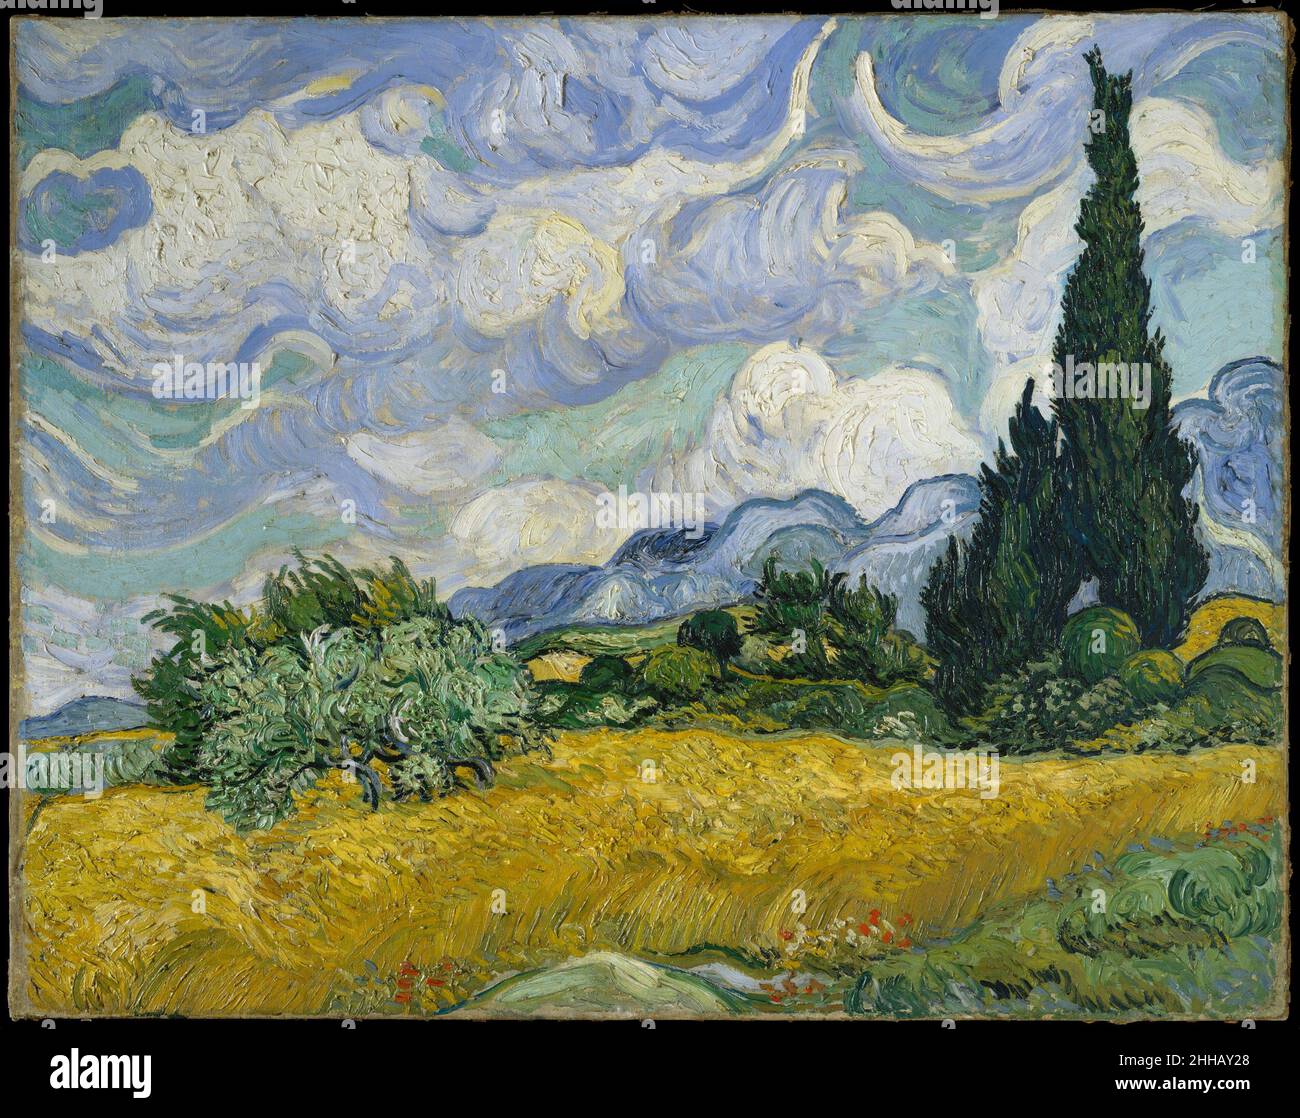 Campo di grano con cipressi 1889 Vincent van Gogh cipressi olandesi guadagnarono terreno nel lavoro di Van Gogh alla fine di giugno 1889 quando decise di dedicare una delle sue prime serie a Saint-Rémy agli alberi torreggianti. Distintivi per il loro ricco impasto, i suoi esuberanti studi sul posto includono la vista verticale ravvicinata dei cipressi del Met (49,30) e questa maestosa composizione orizzontale, che egli ha illustrato nei disegni a penna a canna inviati al fratello il 2 luglio. Van Gogh considerava l'opera attuale come uno dei suoi "migliori" paesaggi estivi e fu spinto a settembre a fare due rendering in studio: Uno sulla s Foto Stock